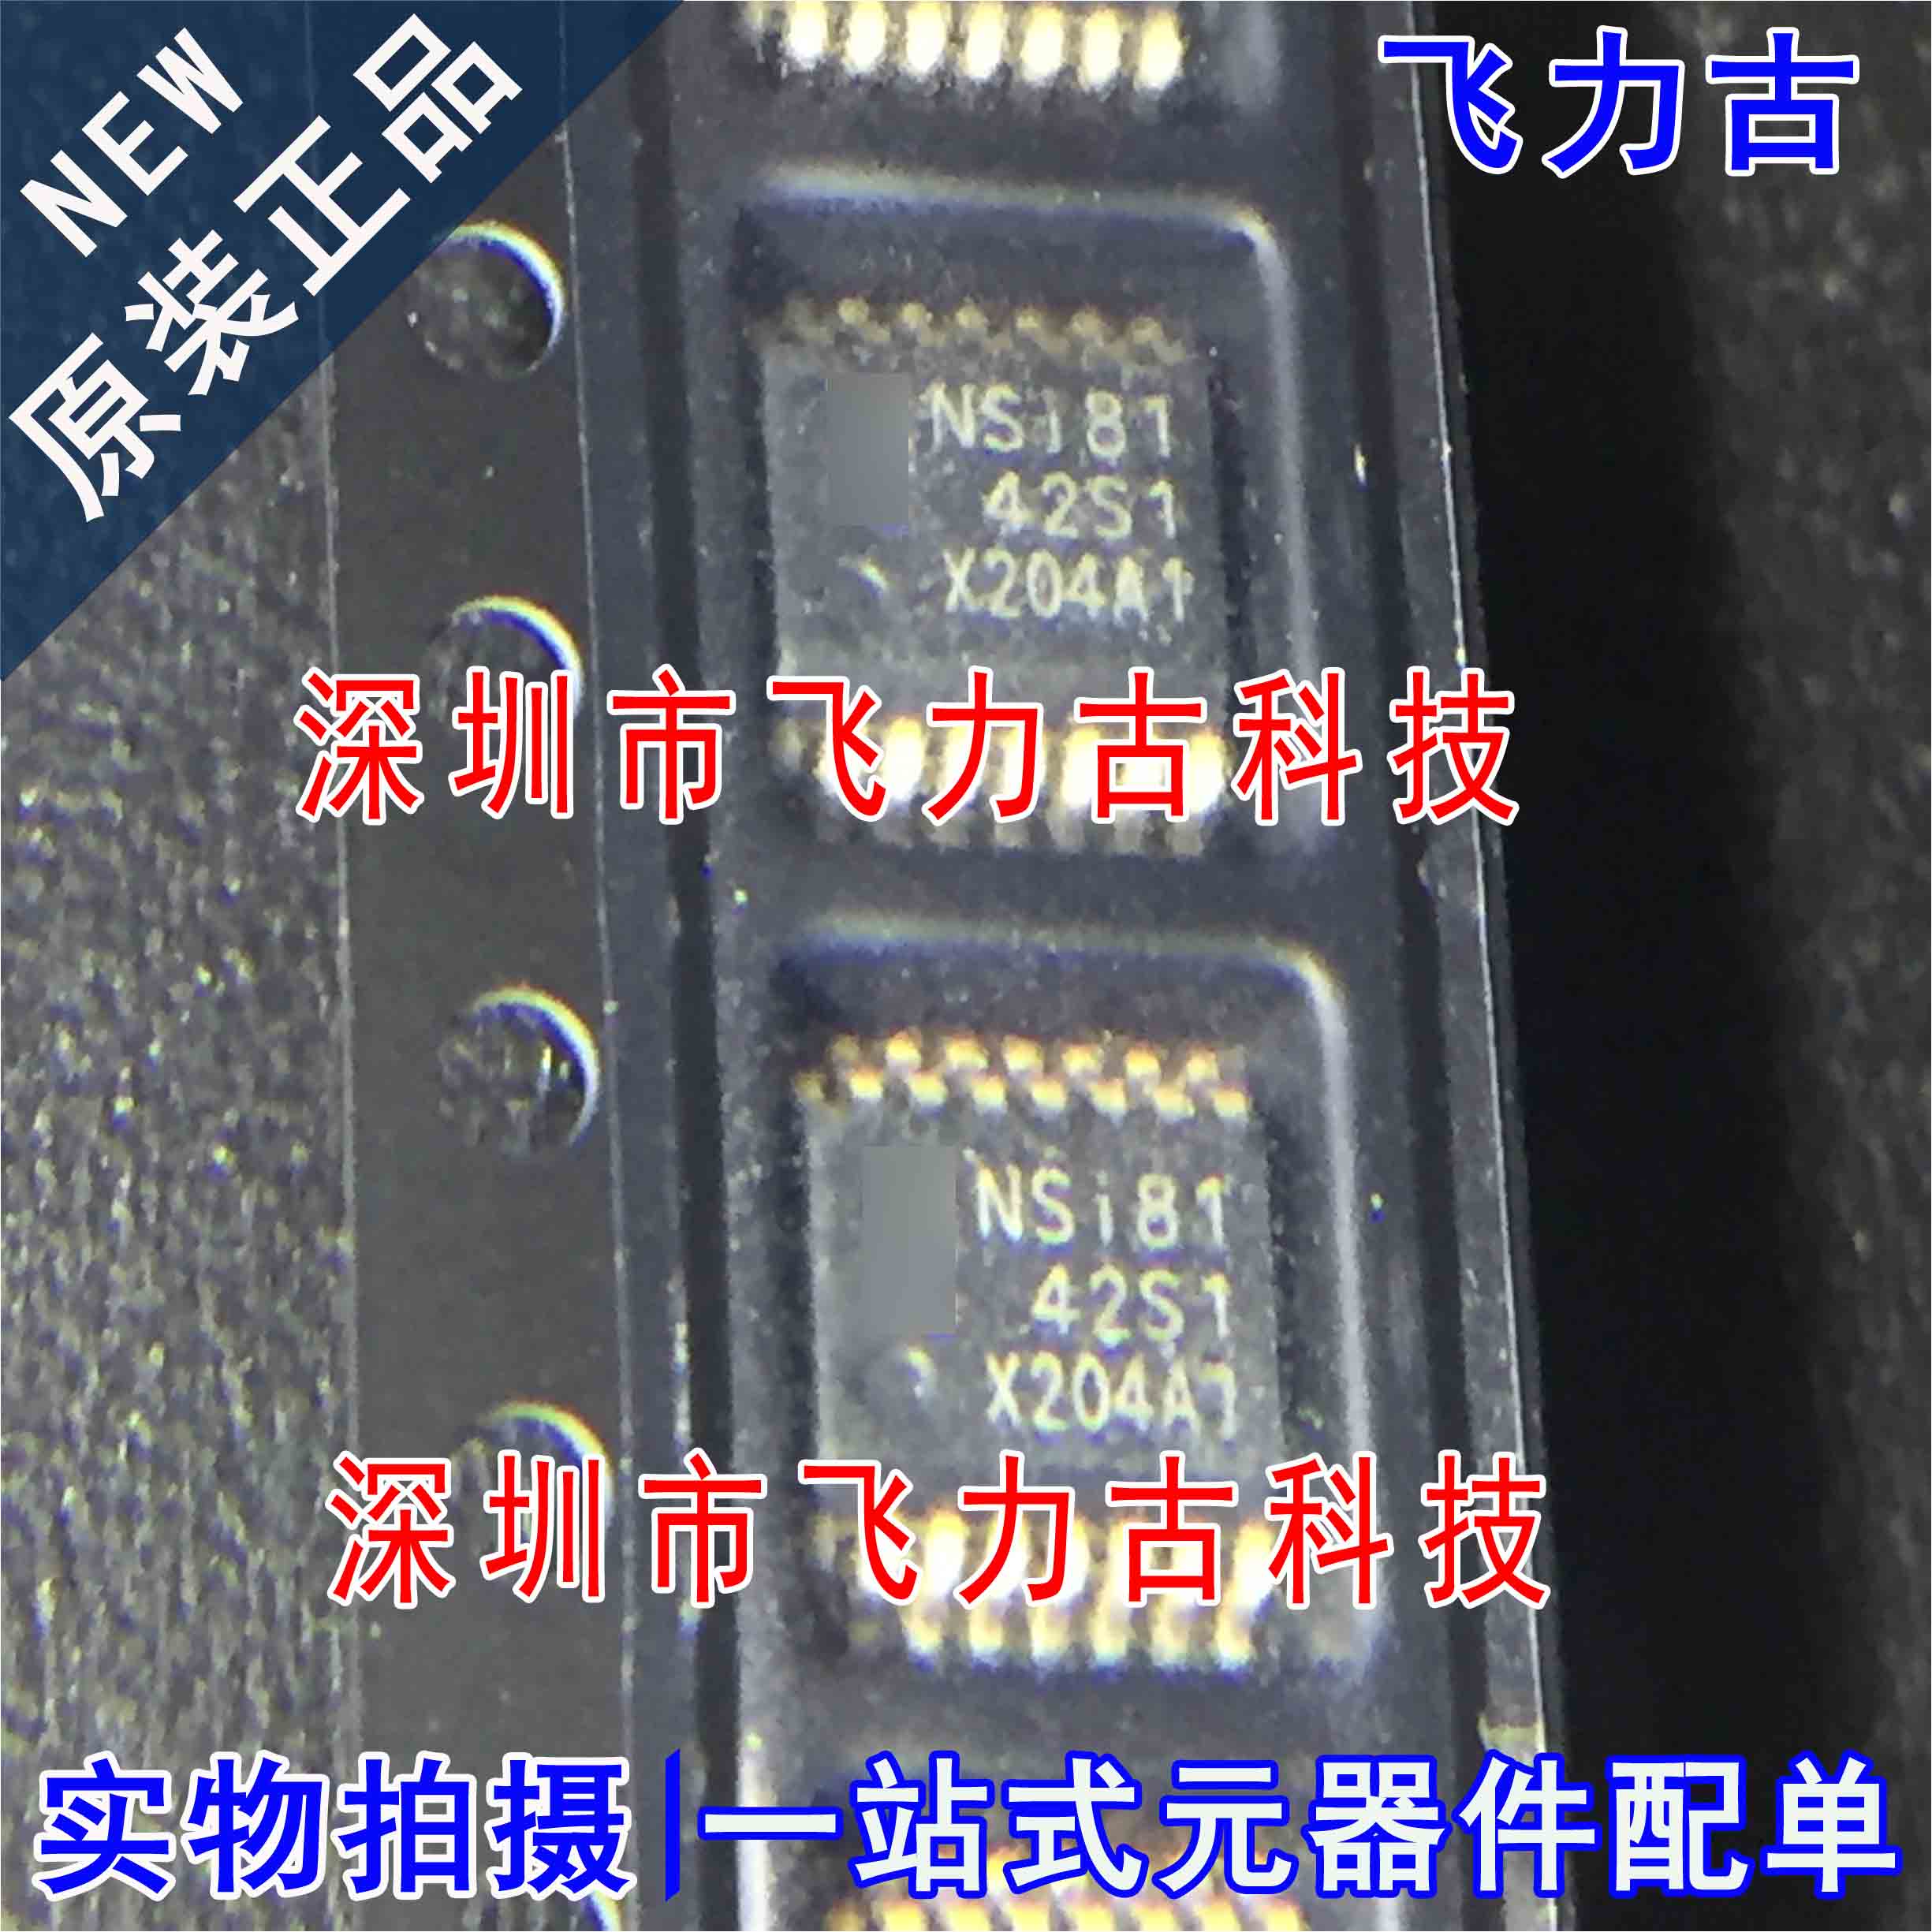 全新原装 NSI8142S1 NSI81 封装SSOP16 四通道数字隔离器 芯片